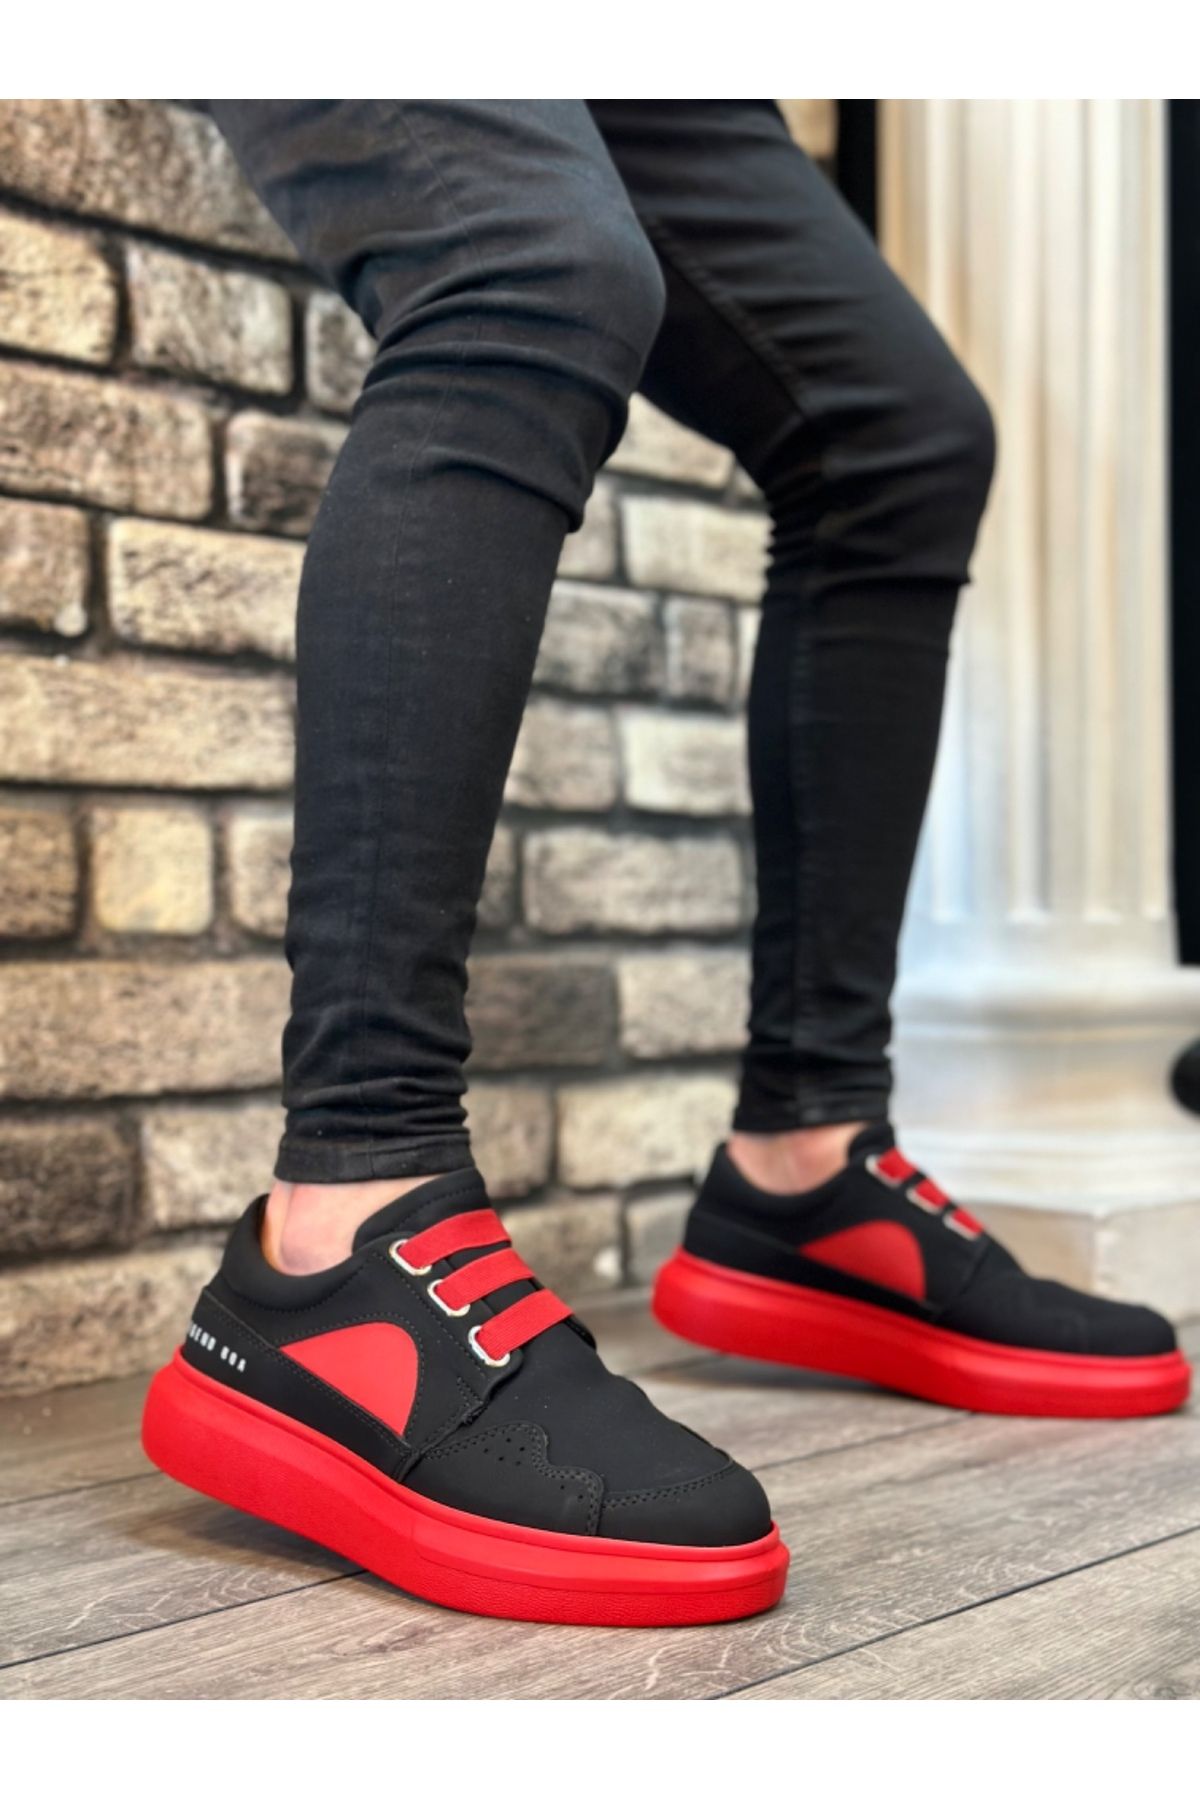 Astra Market Lisinya946 Boa Kalın Taban Bağcıksız Tarz Casual Siyah Kırmızı Erkek Ayakkabı